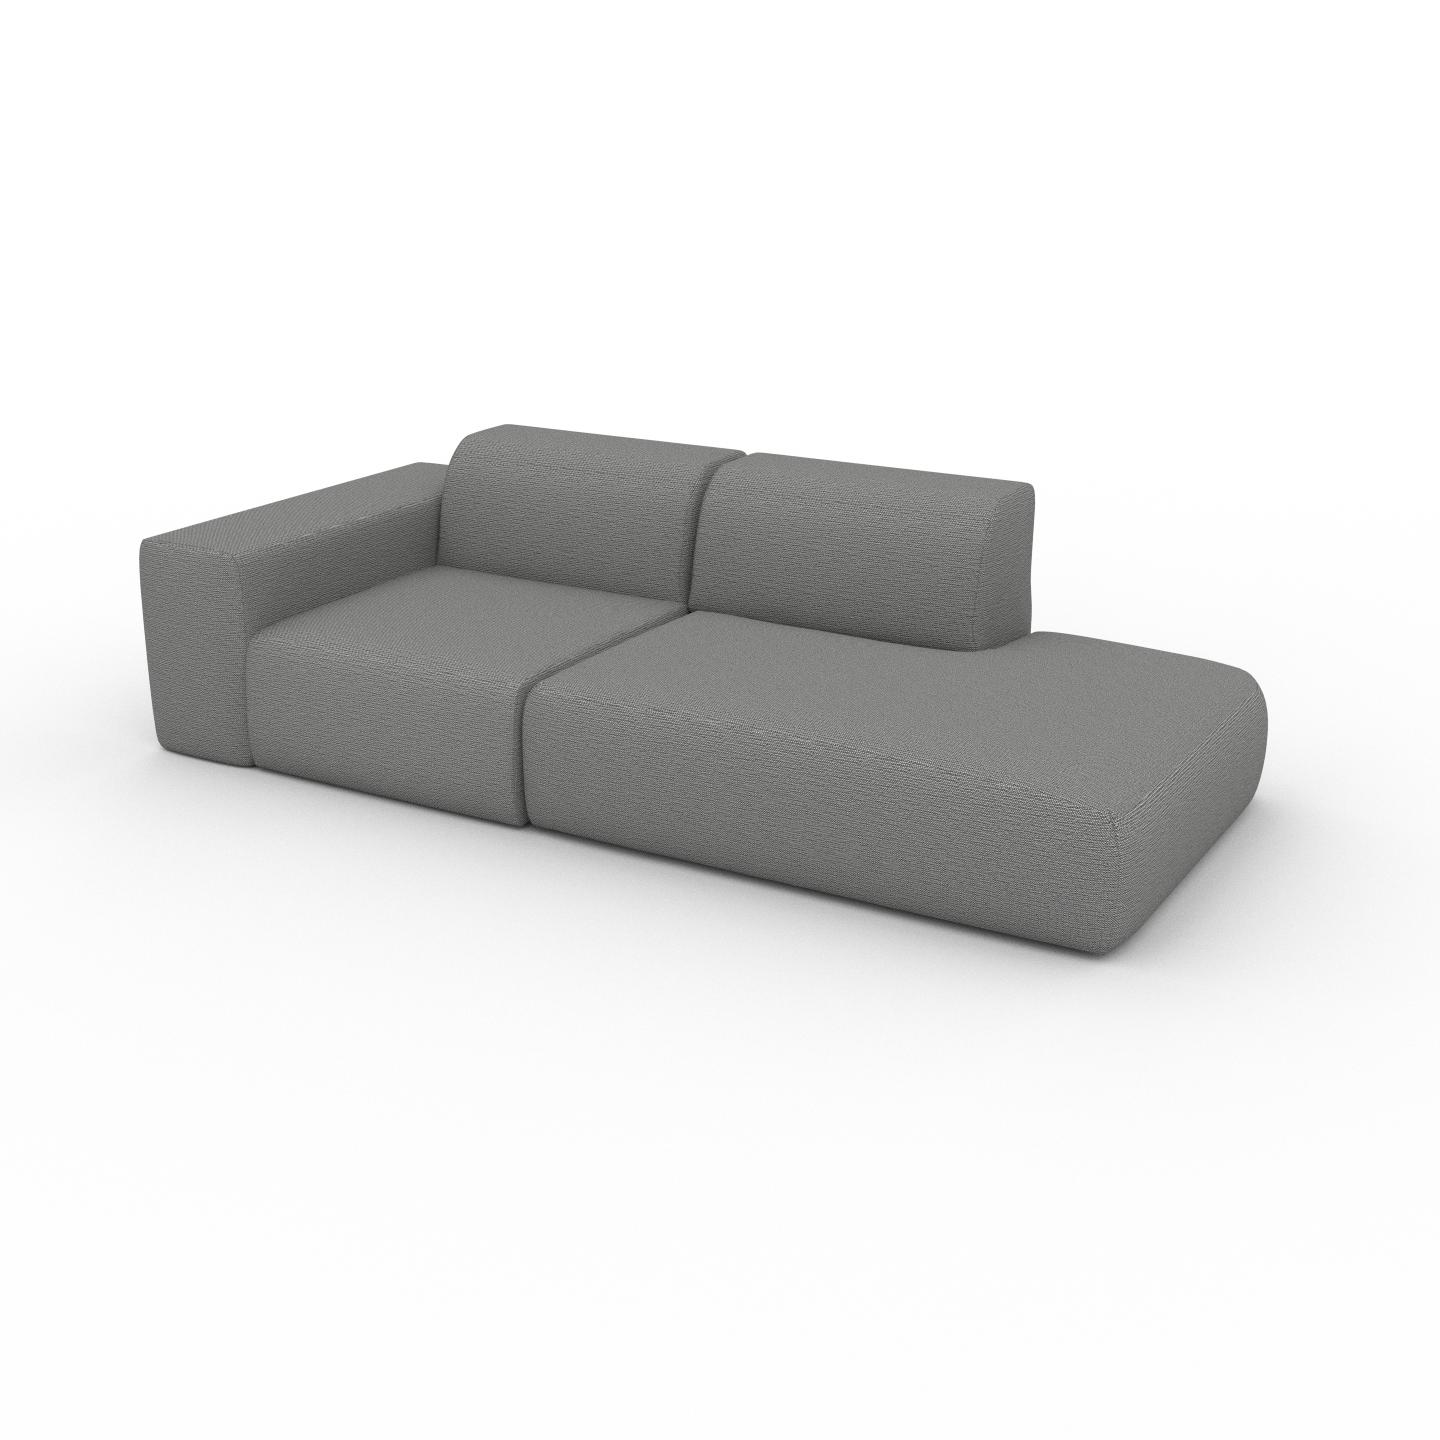 MYCS Sofa Granitweiß - Moderne Designer-Couch: Hochwertige Qualität, einzigartiges Design - 243 x 72 x 107 cm, Komplett anpassbar